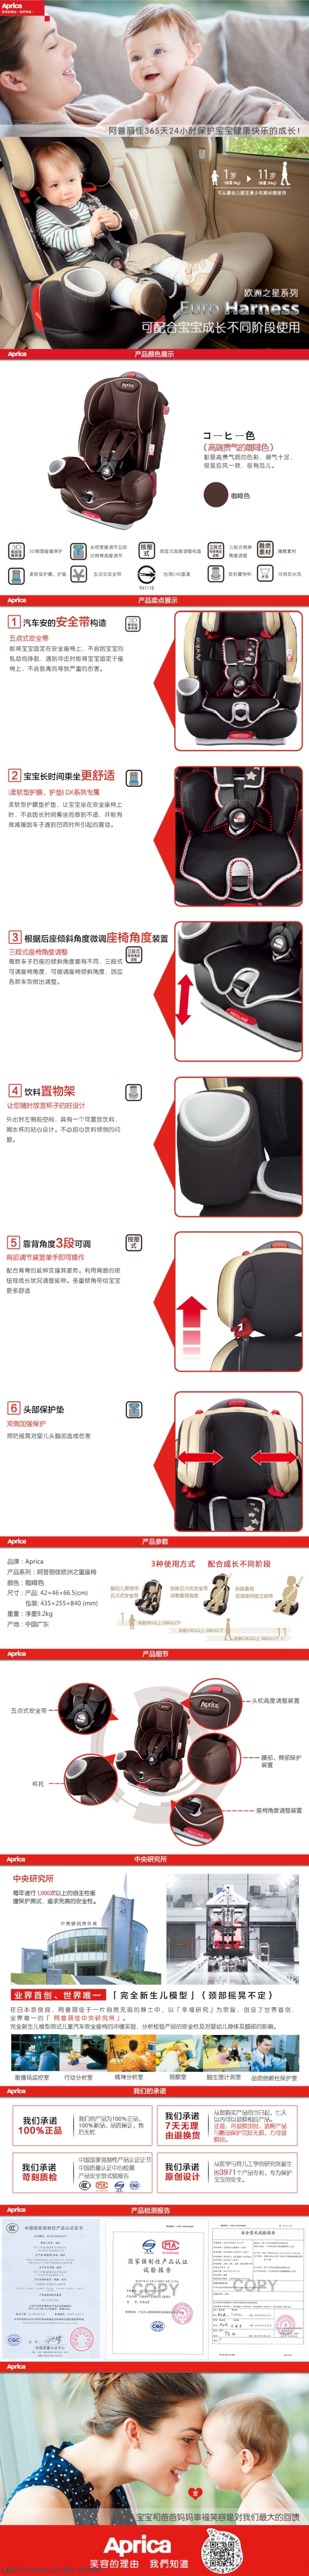 aprica 阿普 丽佳 欧洲 之星 婴童 安全 座椅 欧洲之星 婴童安全座椅 原创设计 原创淘宝设计